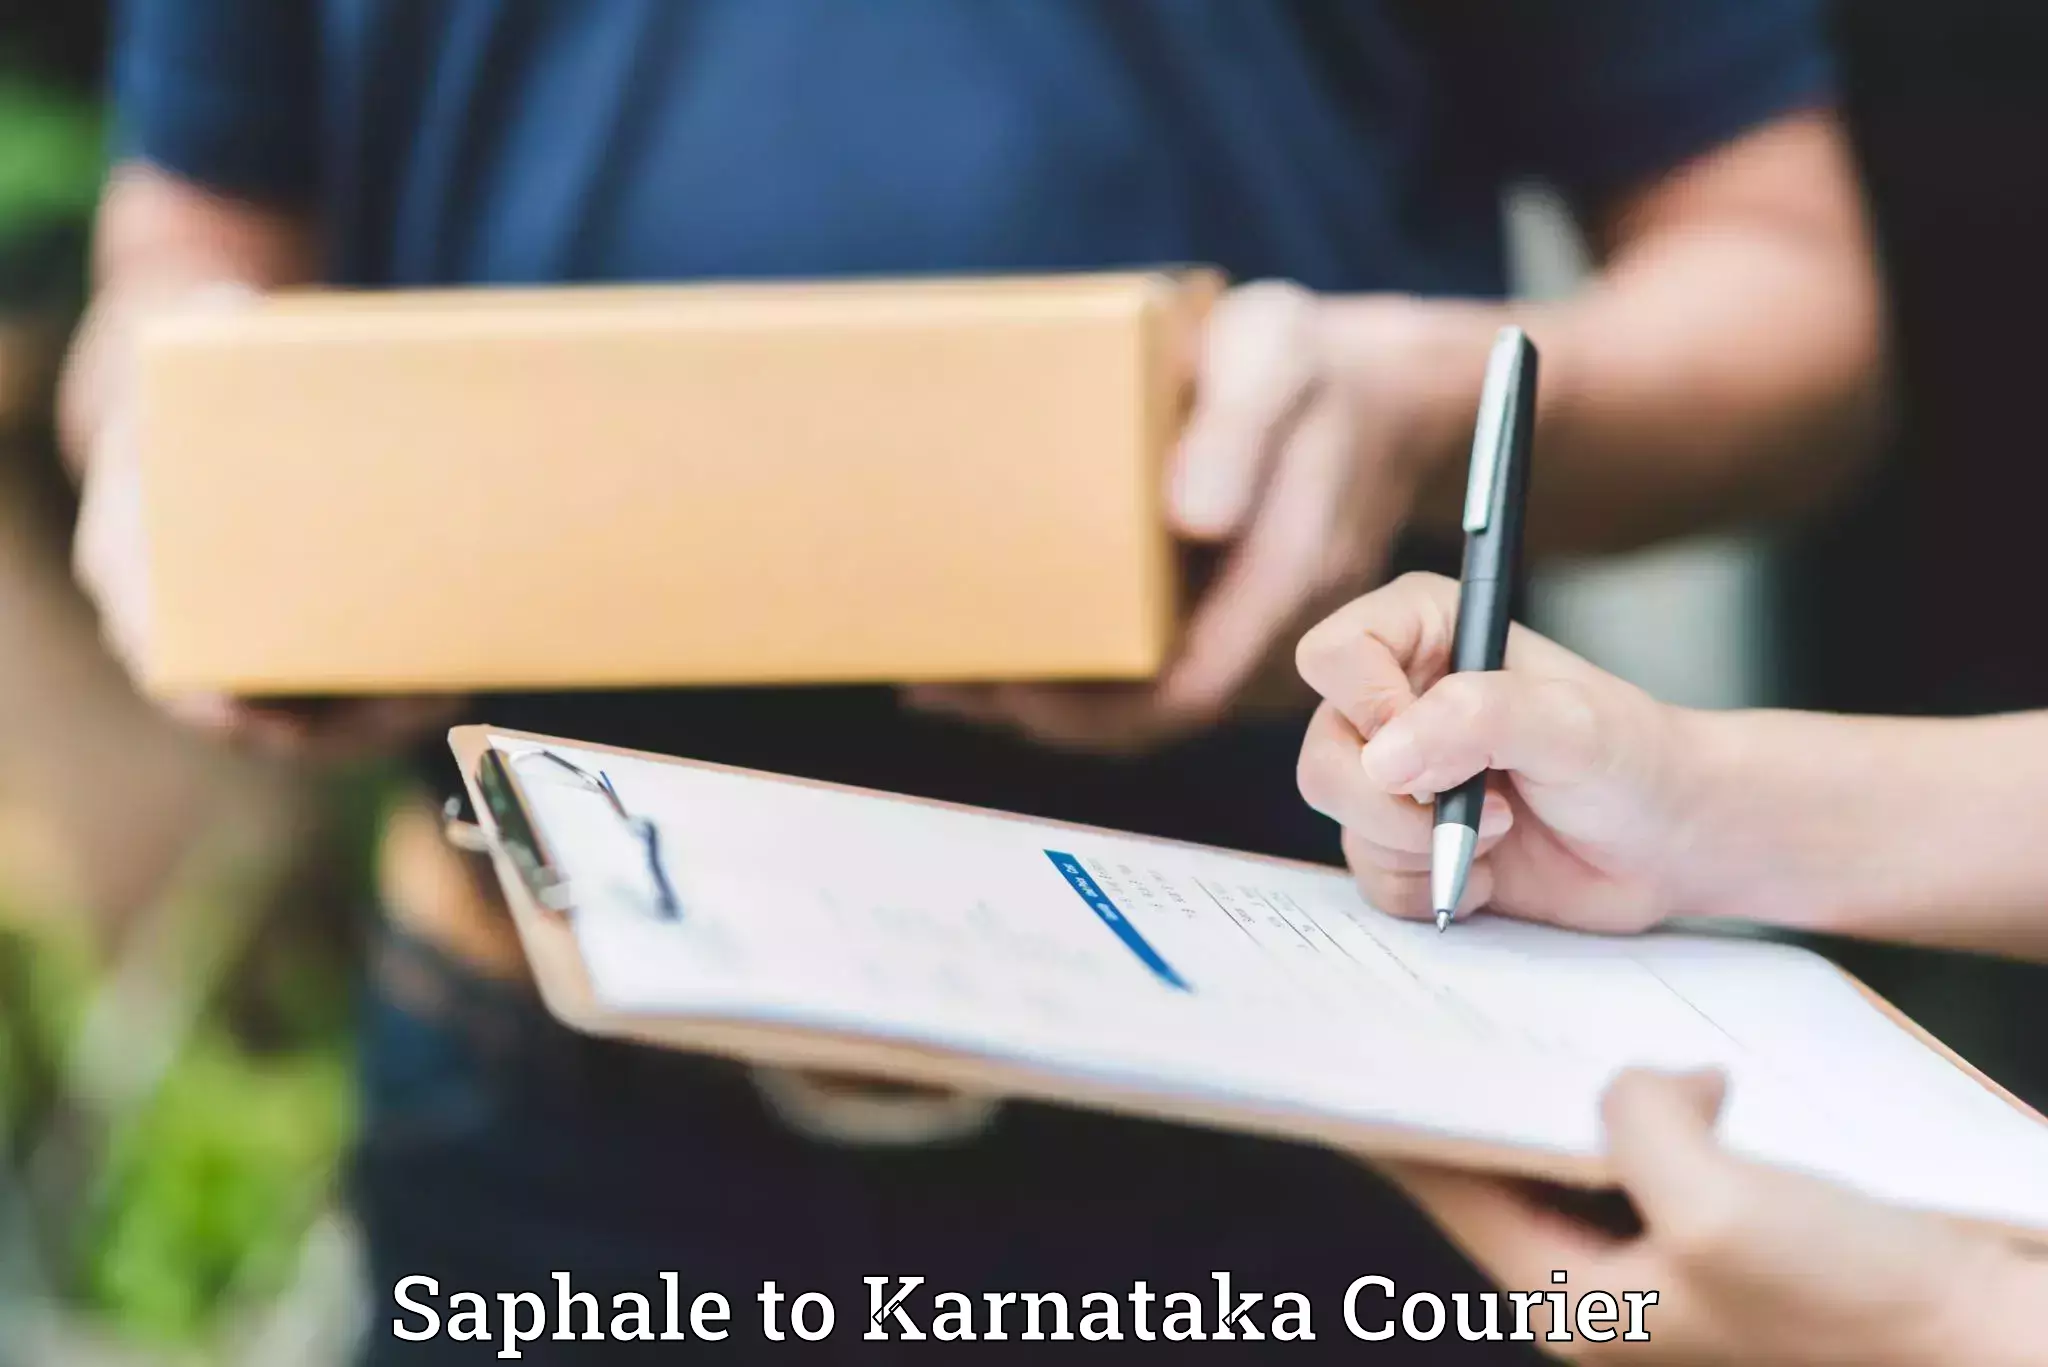 Baggage delivery estimate Saphale to Karnataka